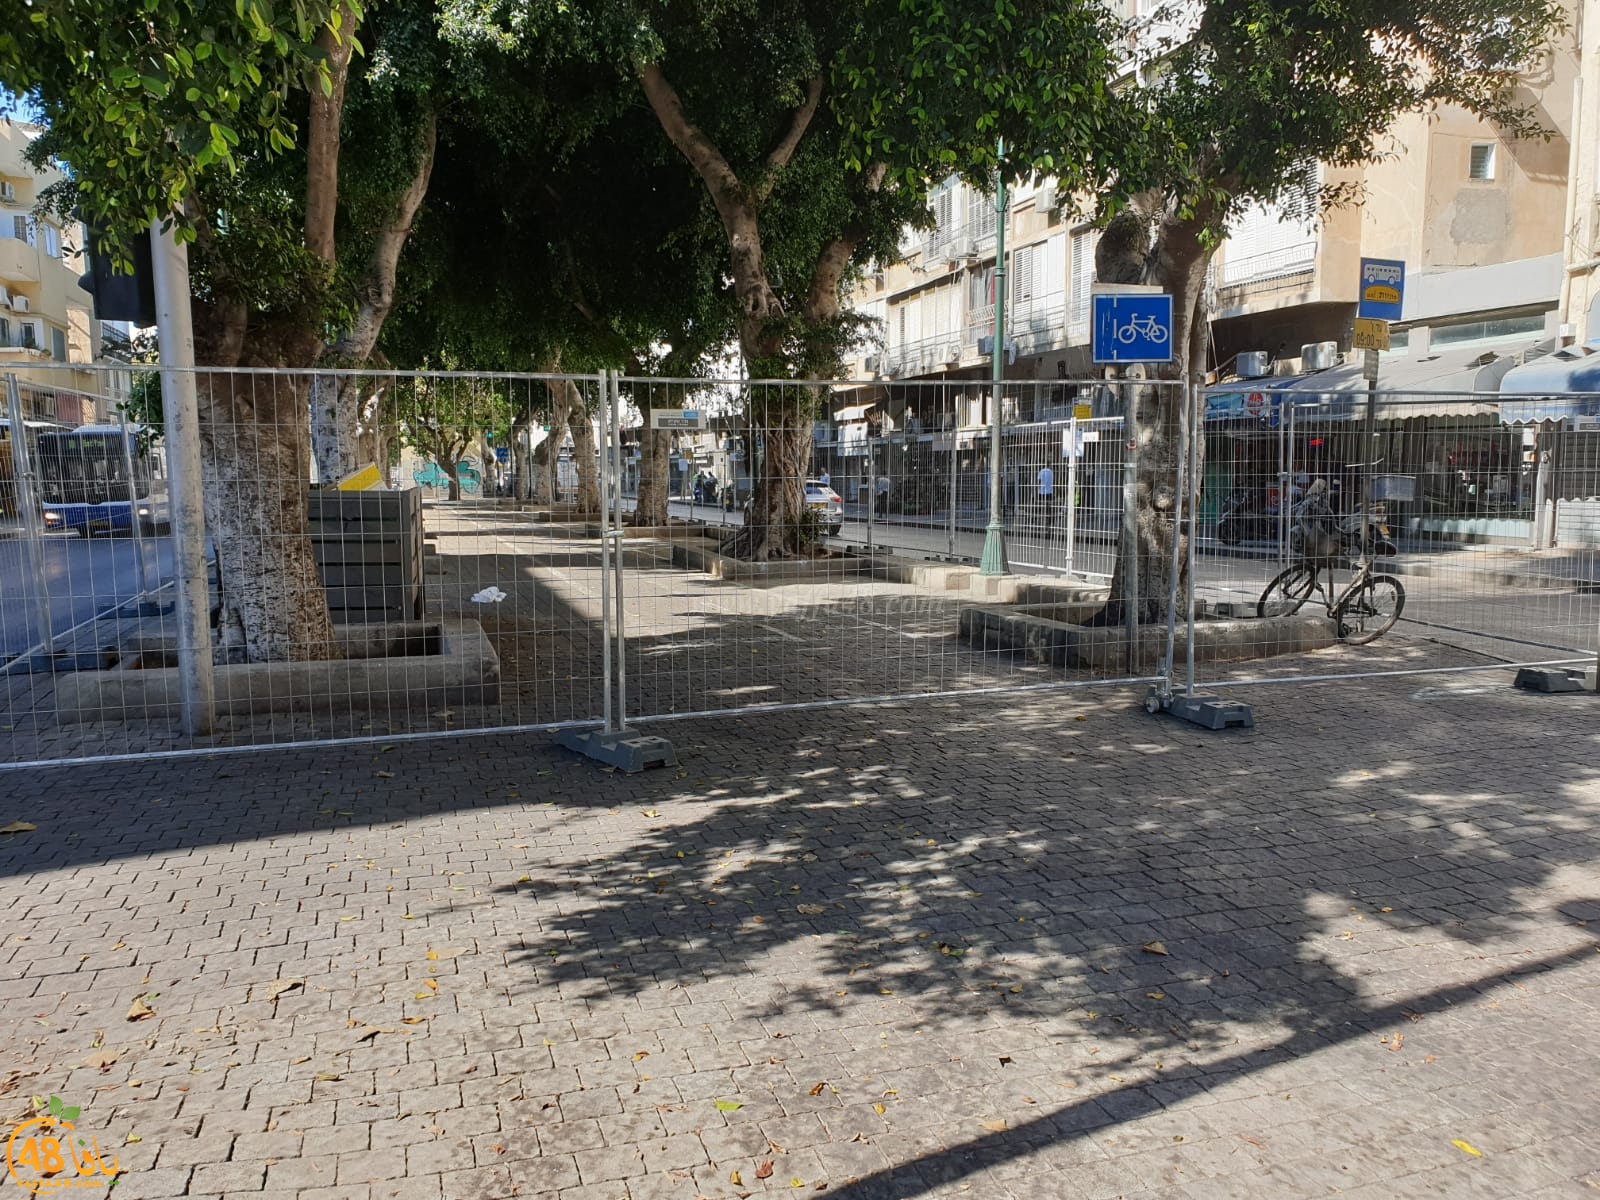 بالصور: البدء بإغلاق مقاطع ومسارات بشارع شديروت يروشلايم في يافا 